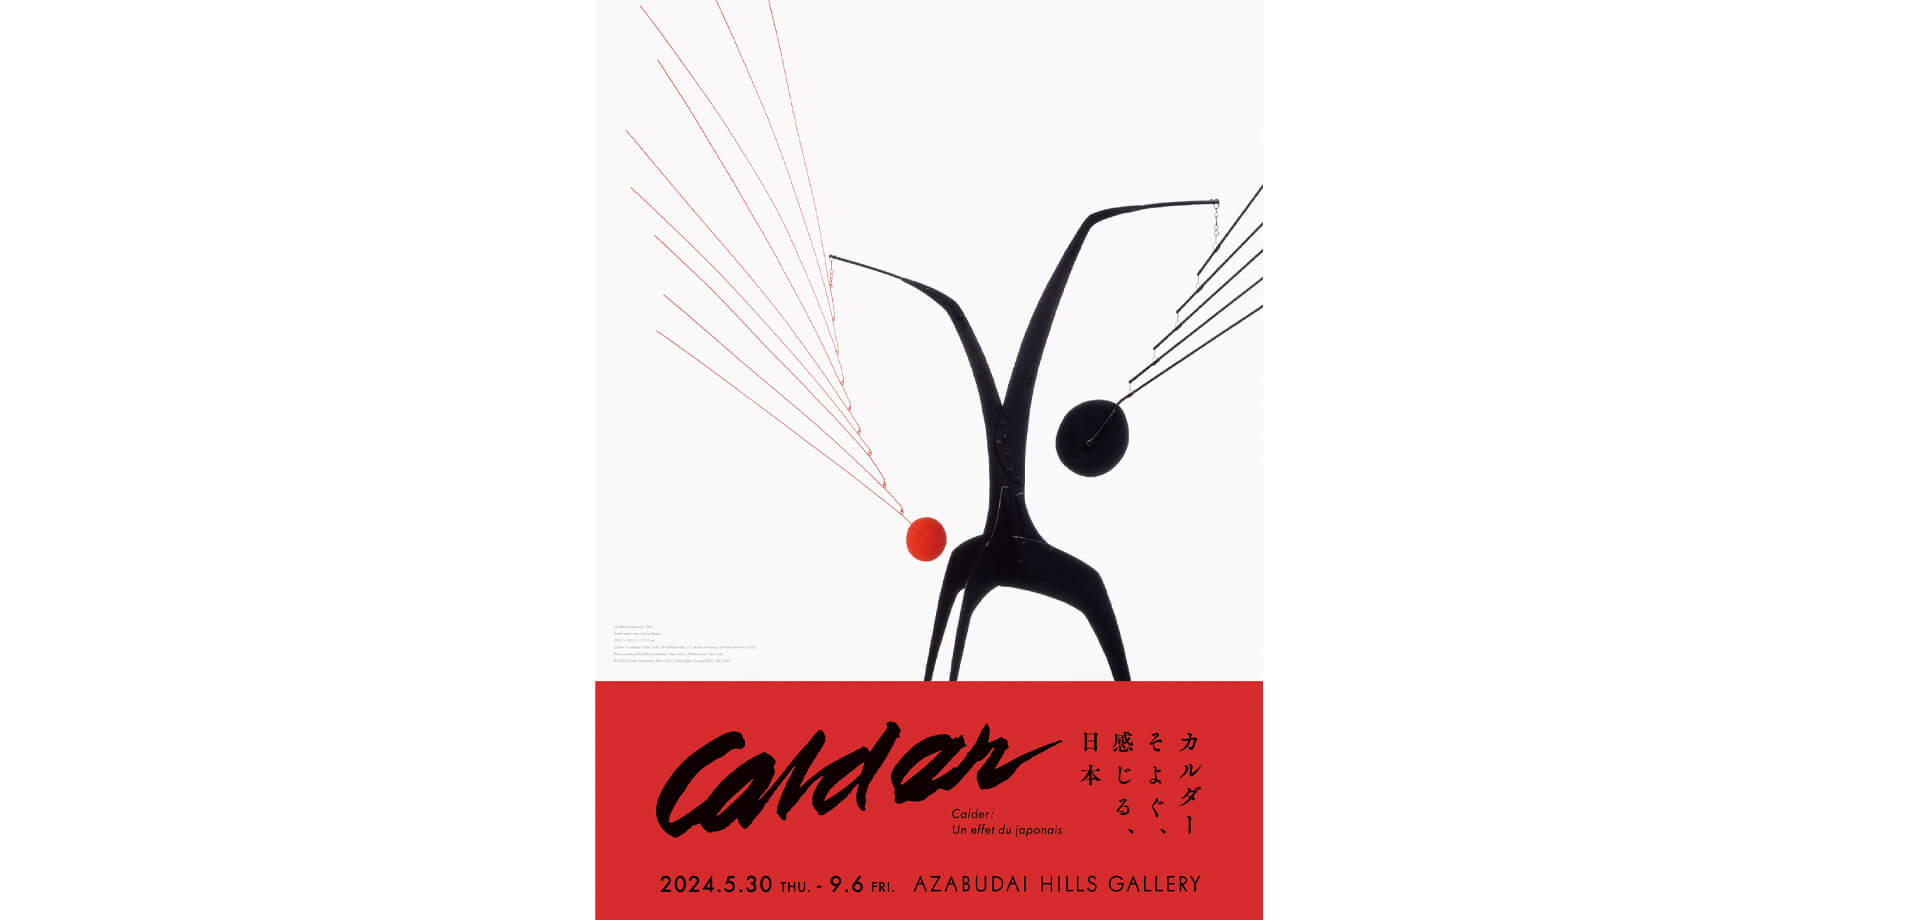 アレクサンダー・カルダーの個展「カルダー：そよぐ、感じる、日本」 ポスター